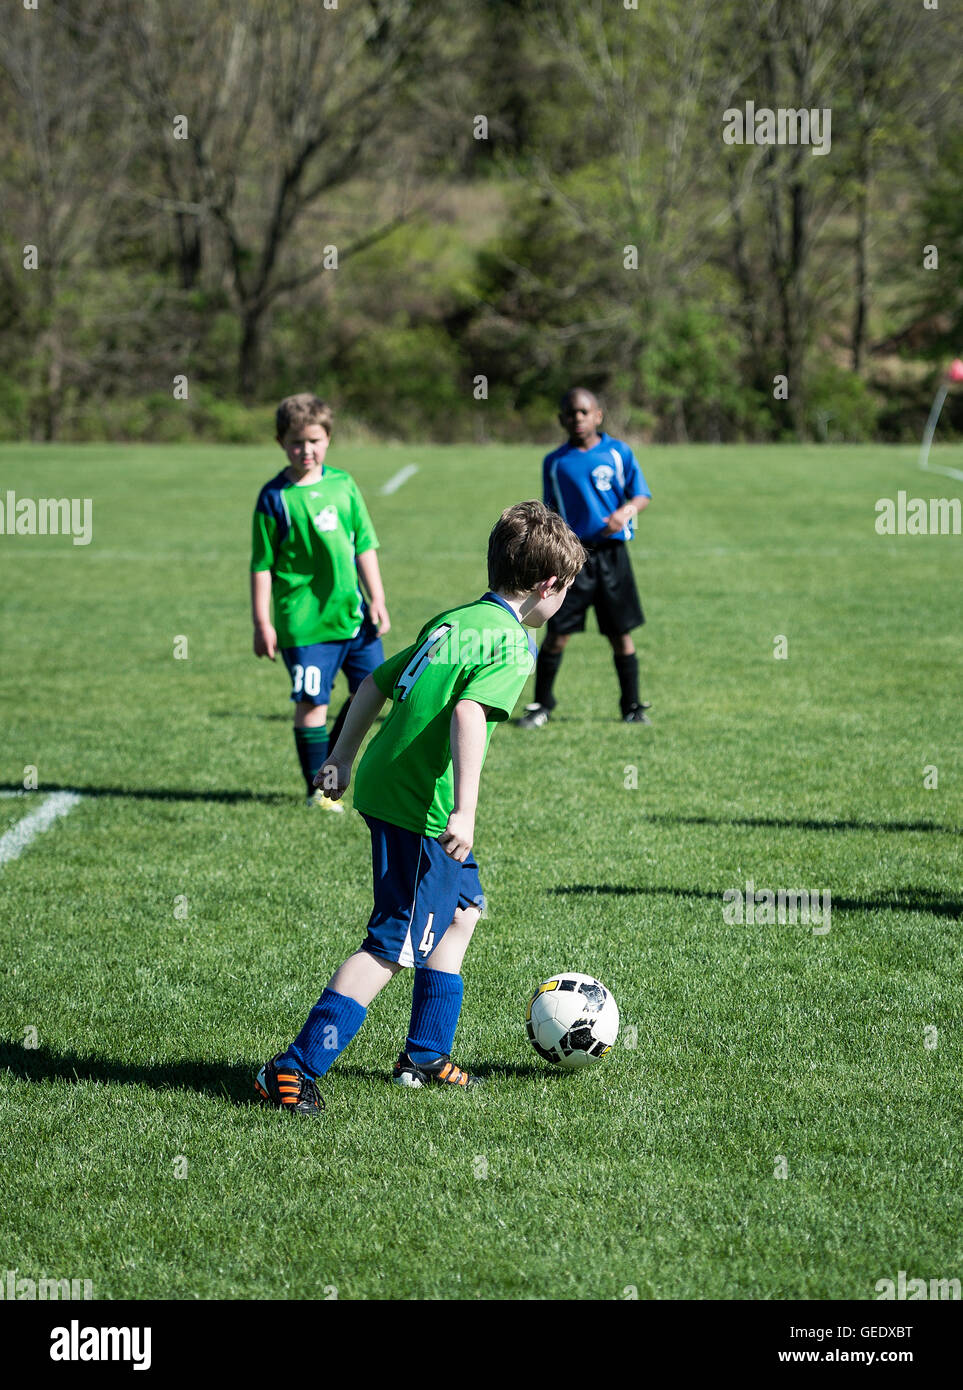 Jeu de soccer pour les jeunes. Banque D'Images